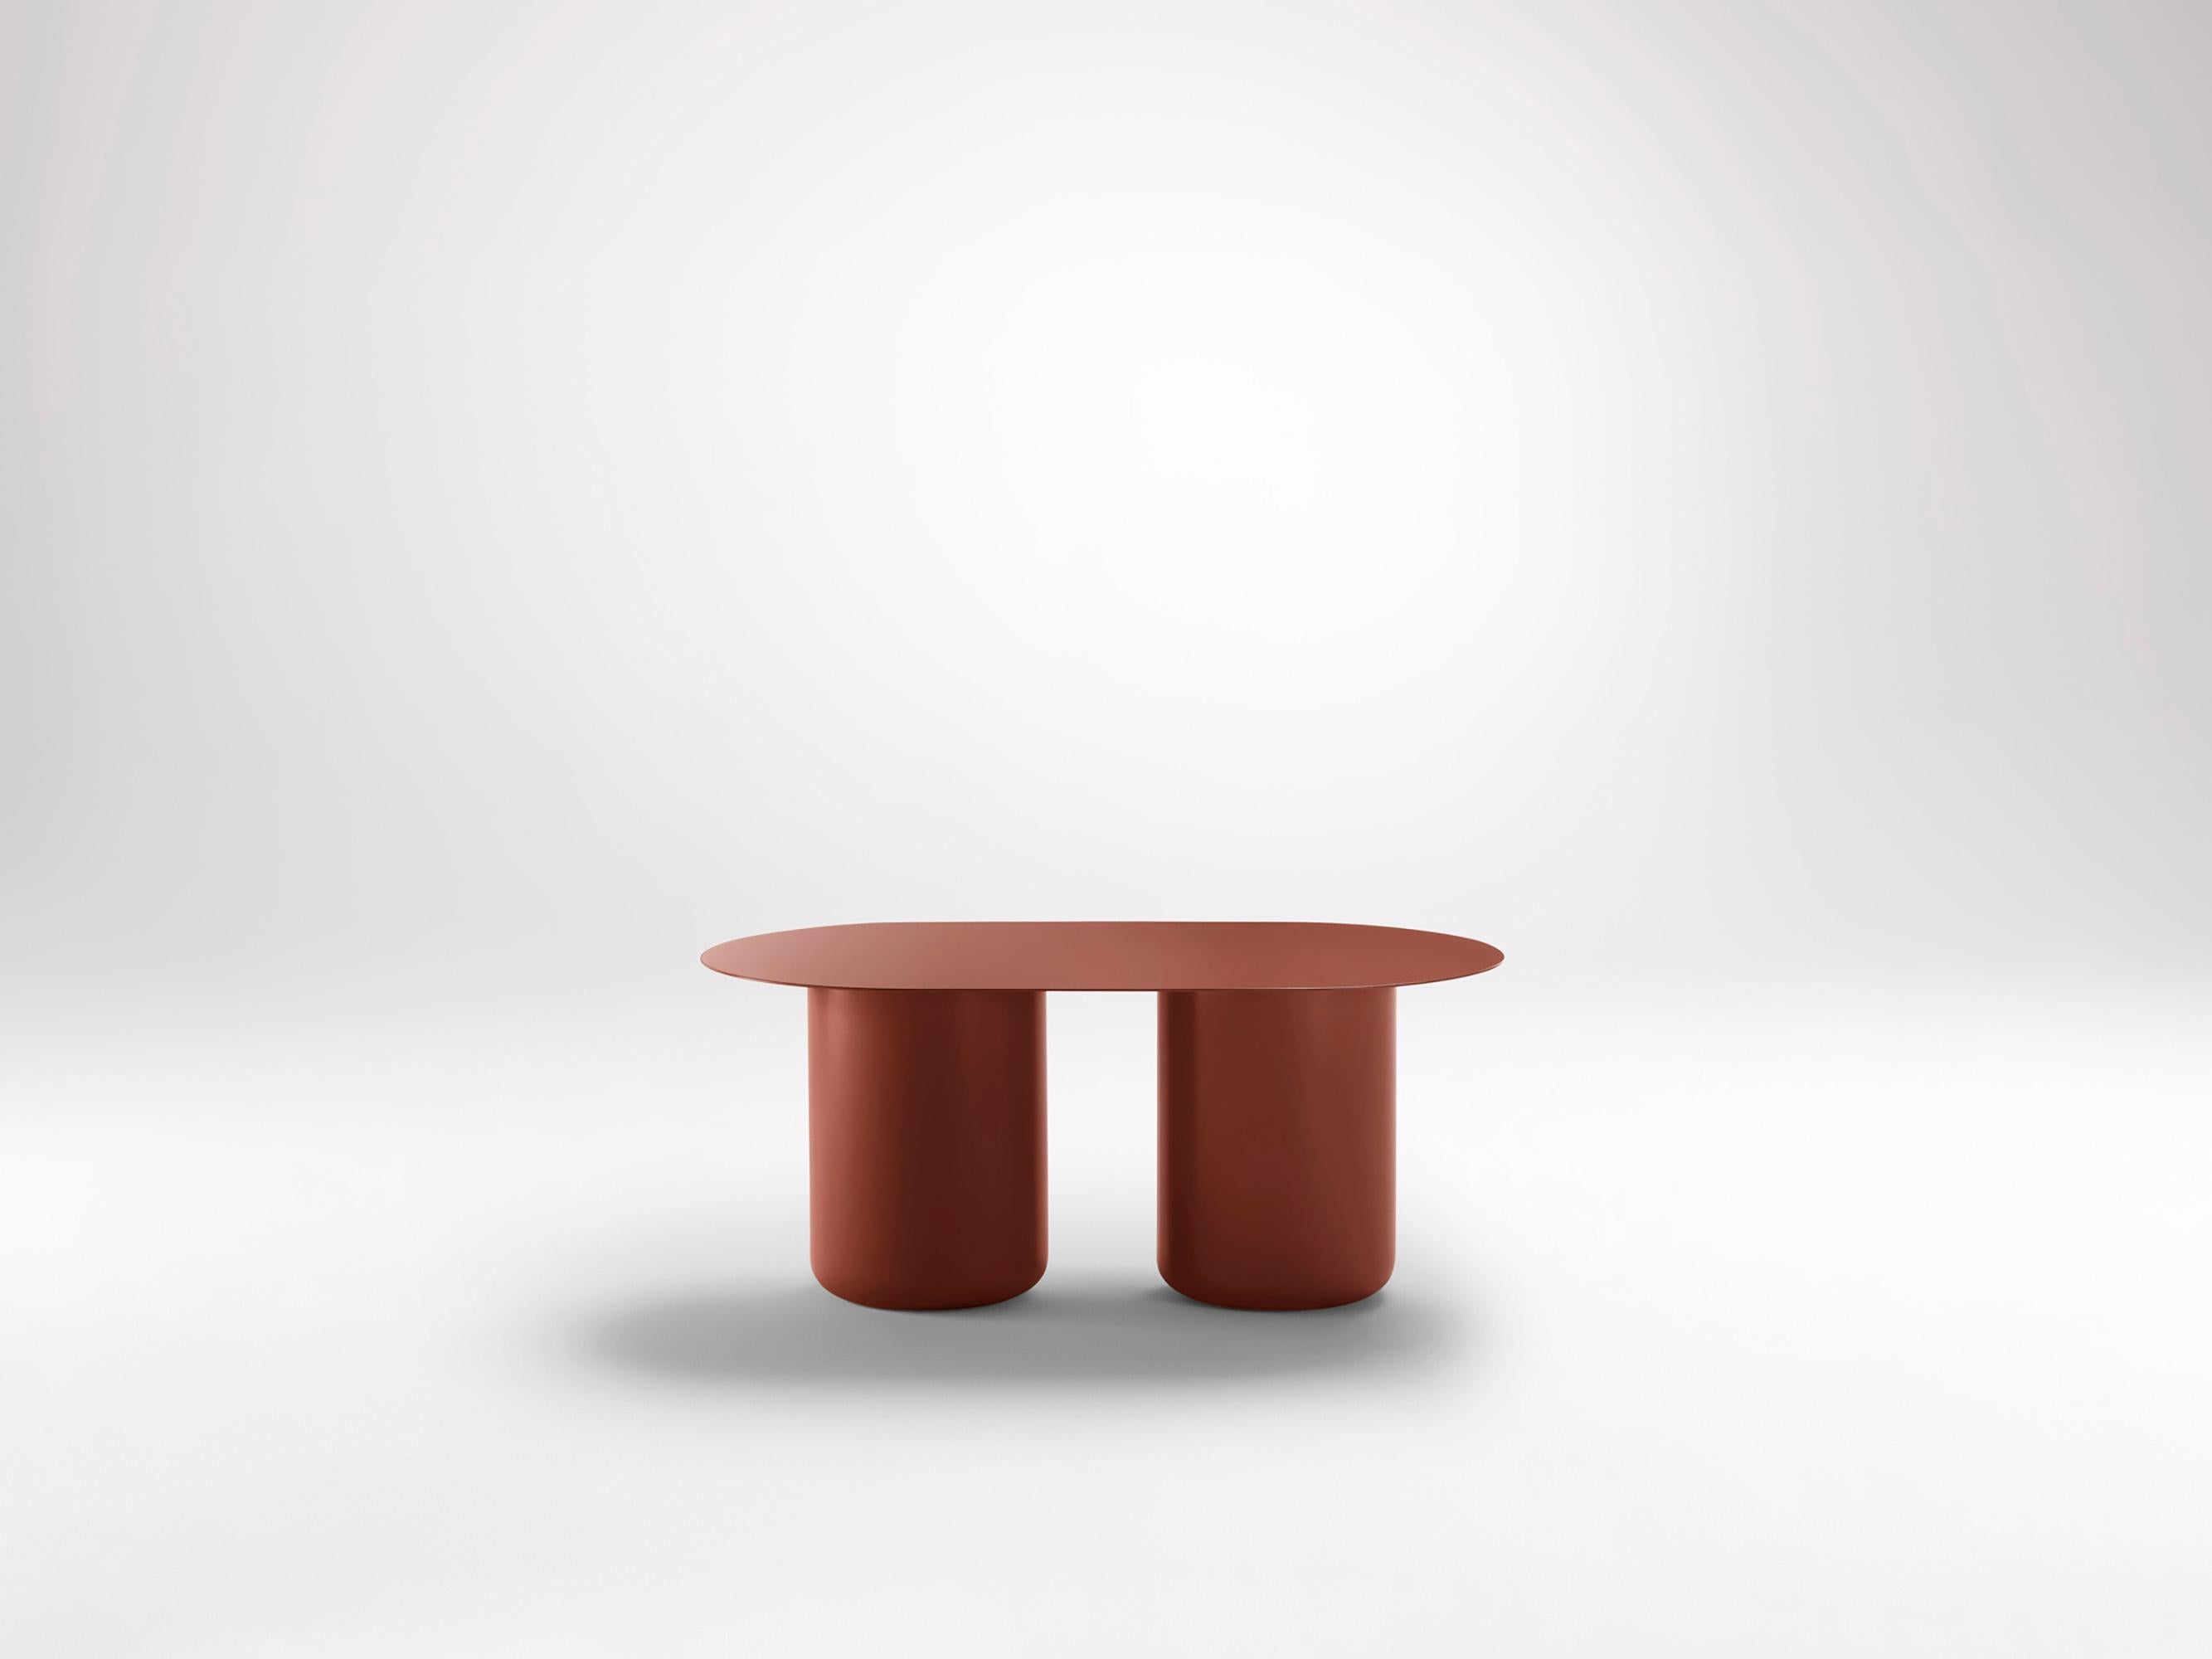 Kopfland-Roter Tisch 02 von Coco Flip
Abmessungen: T 48 / 85 x H 32 / 36 / 40 / 42 cm
MATERIALIEN: Baustahl, pulverbeschichtet mit Zinkgrundierung. 
Gewicht: 20 kg

Coco Flip ist ein Studio für Möbel- und Beleuchtungsdesign in Melbourne, das von